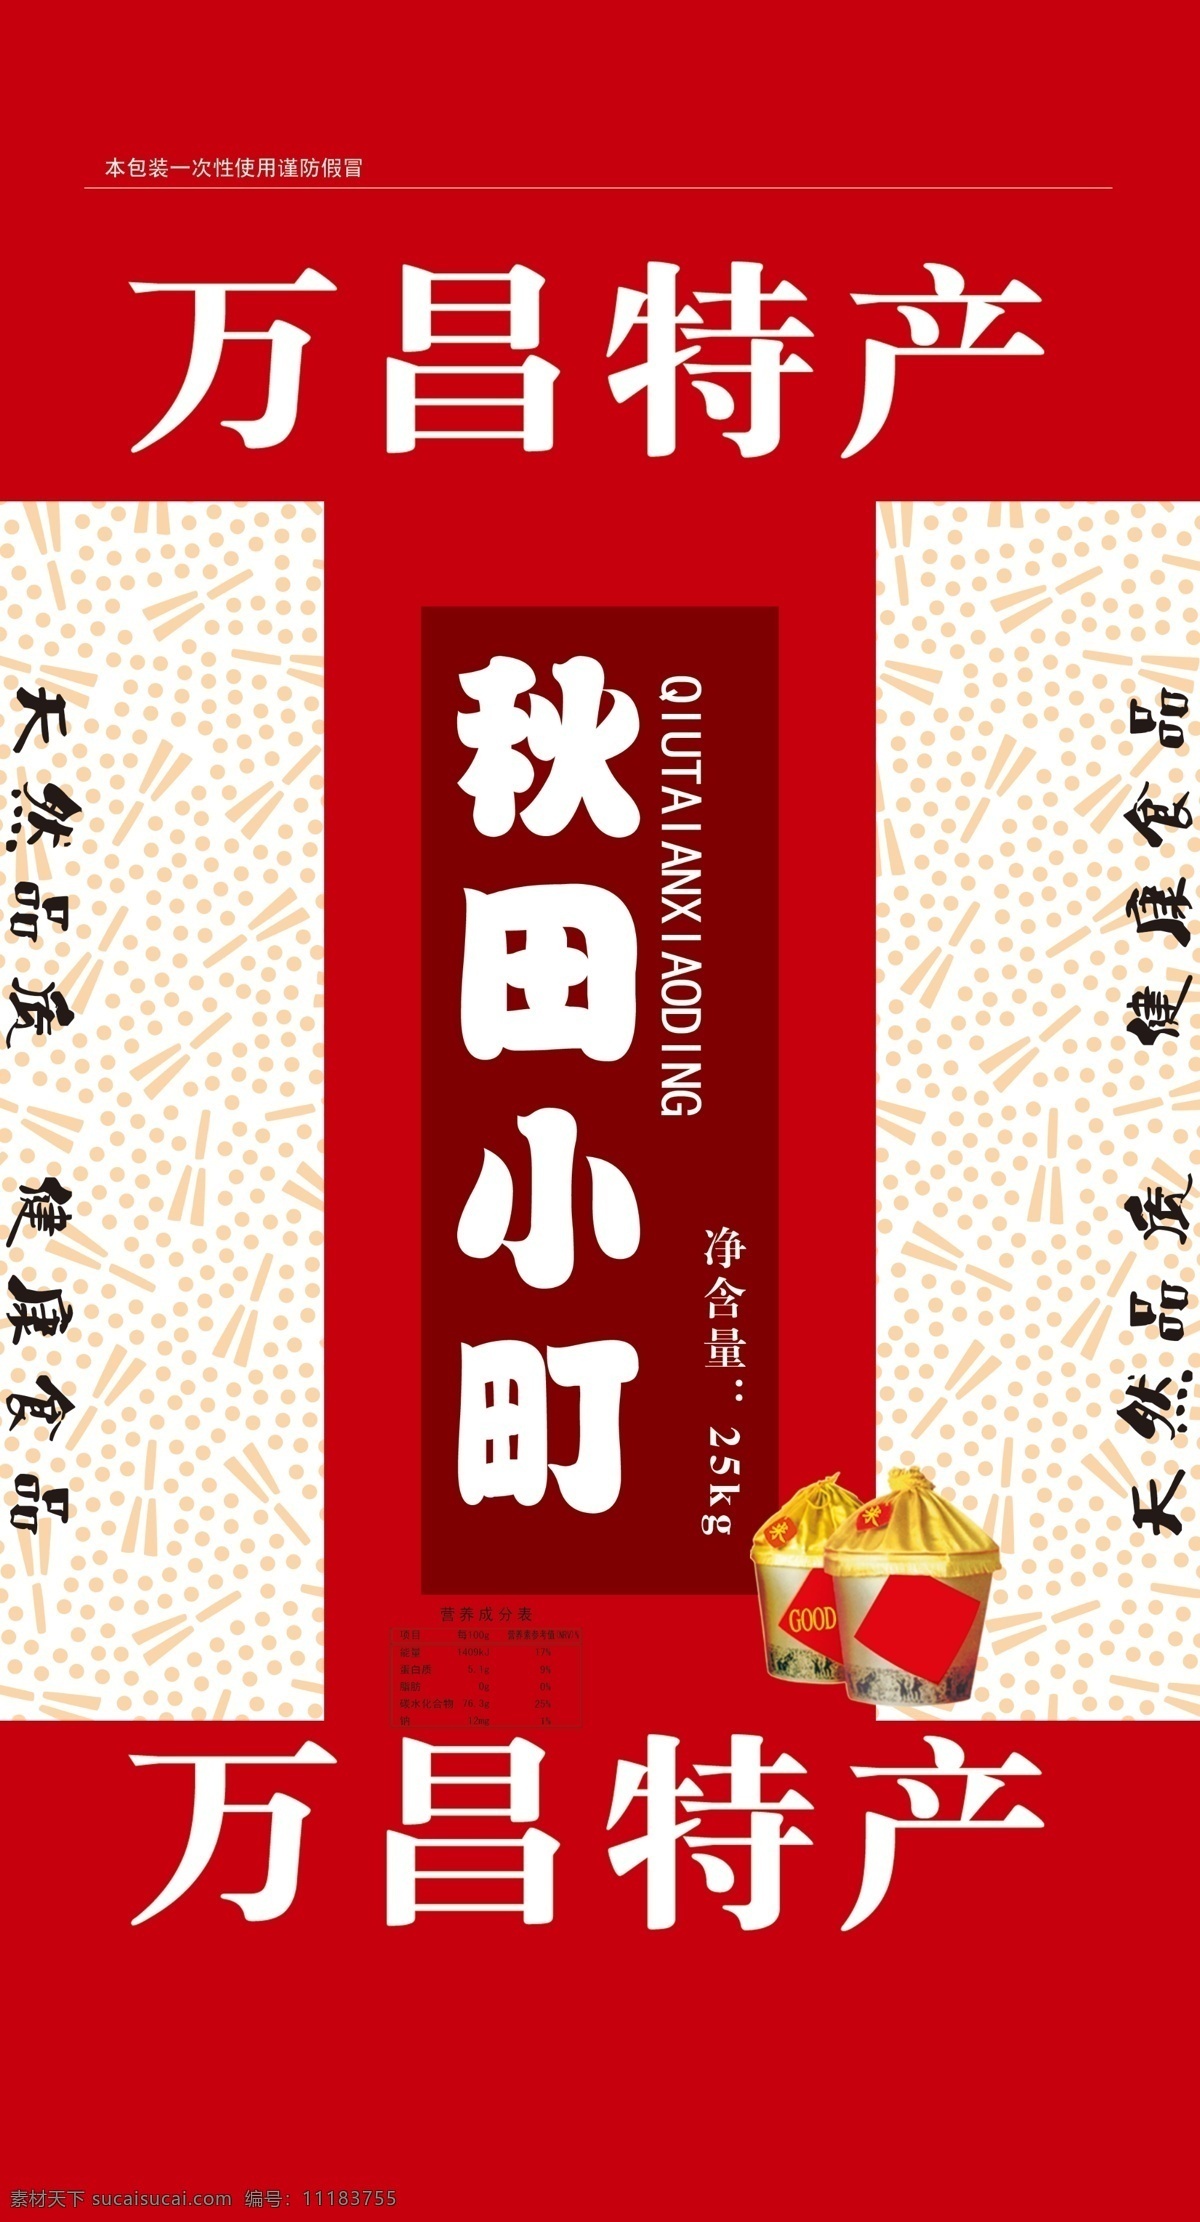 秋田小町 东北特产 大米包装设计 红色